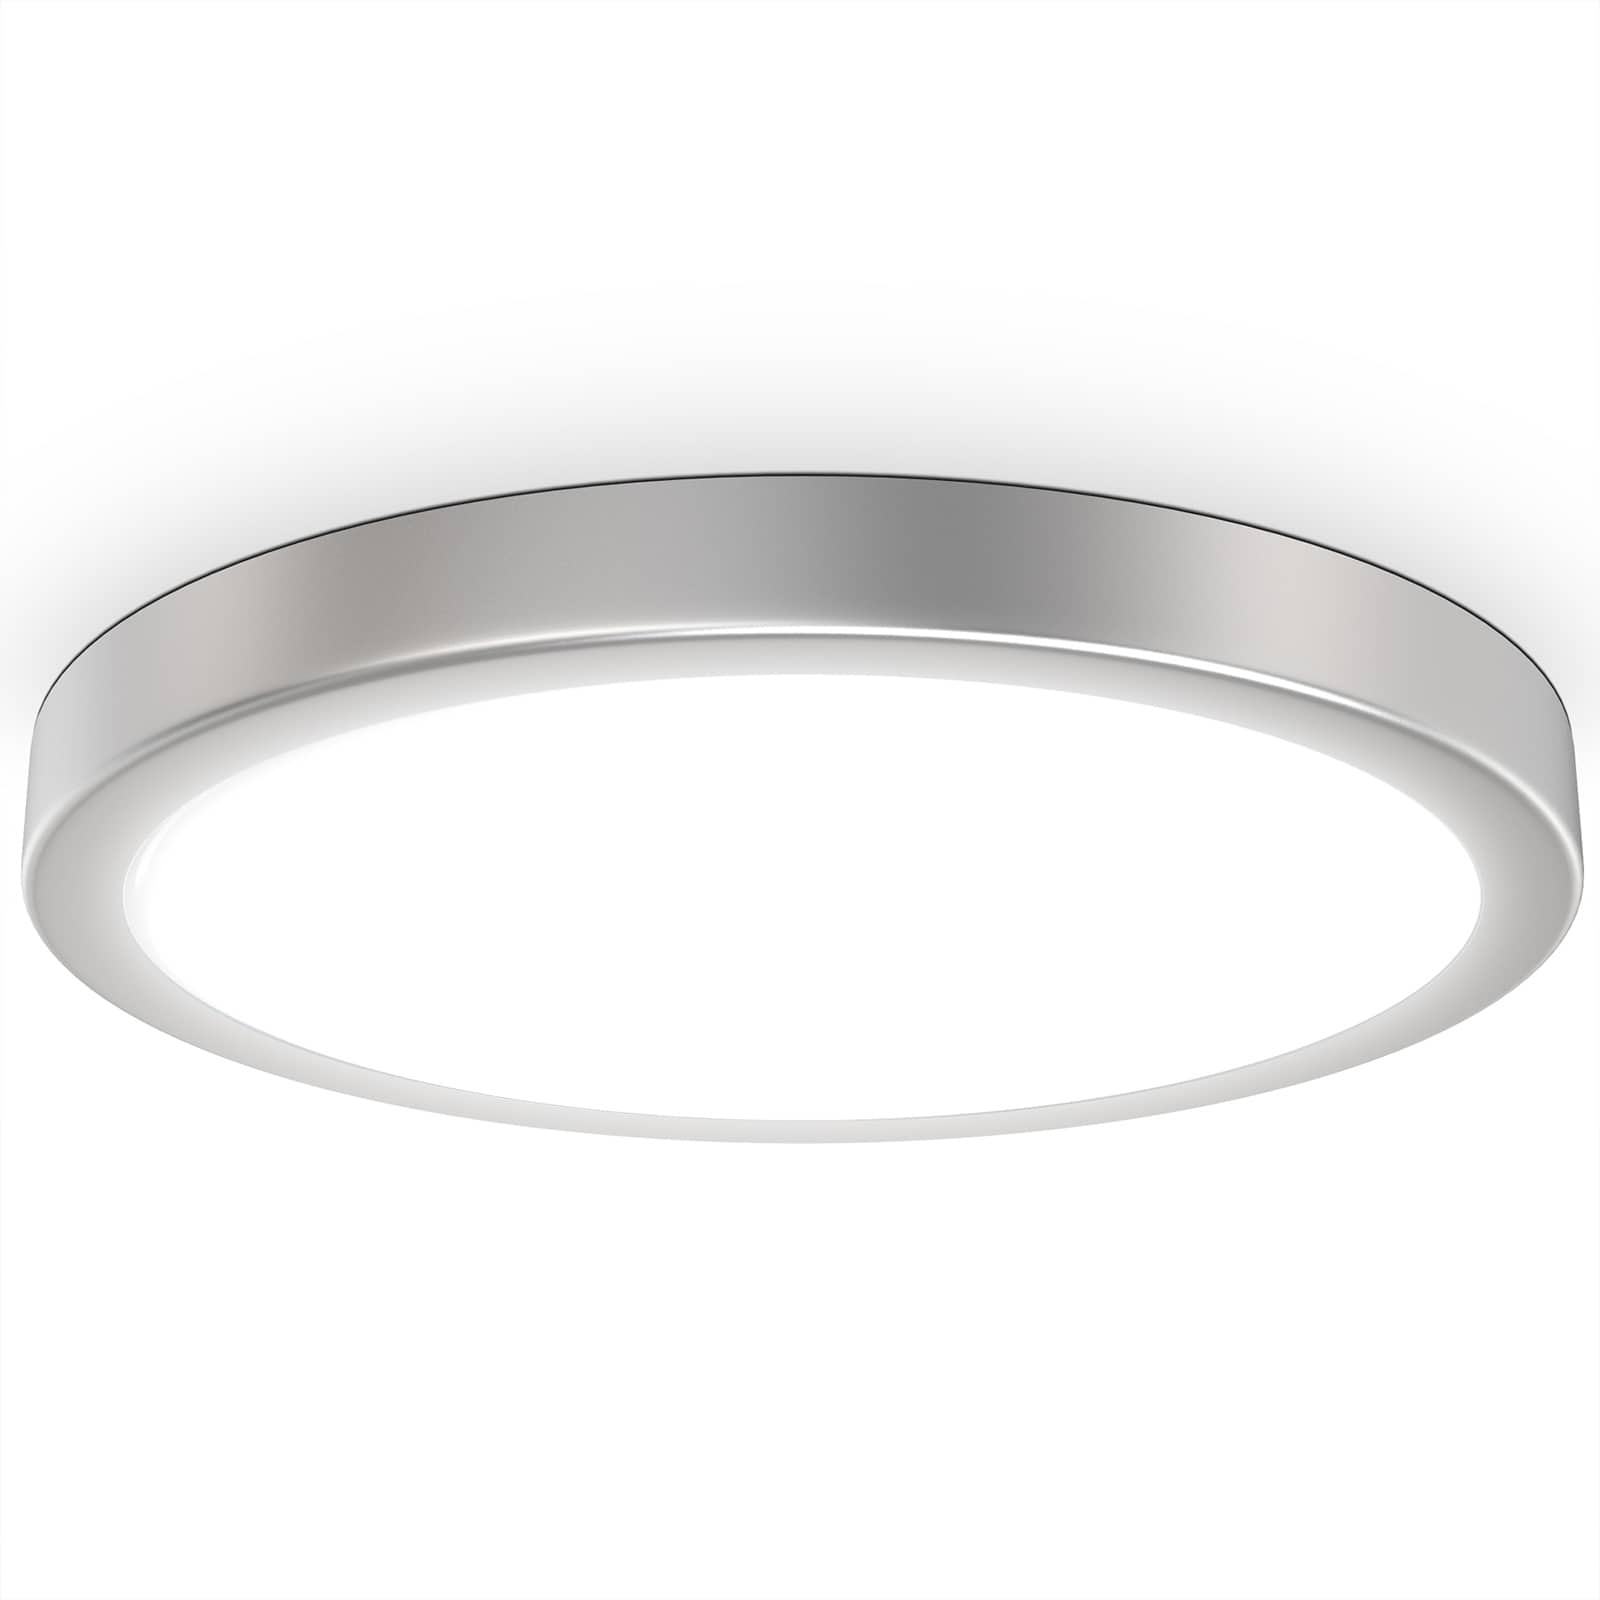 LED Deckenleuchte rund mit silbernem Metallrahmen Ø 38 cm  - 1